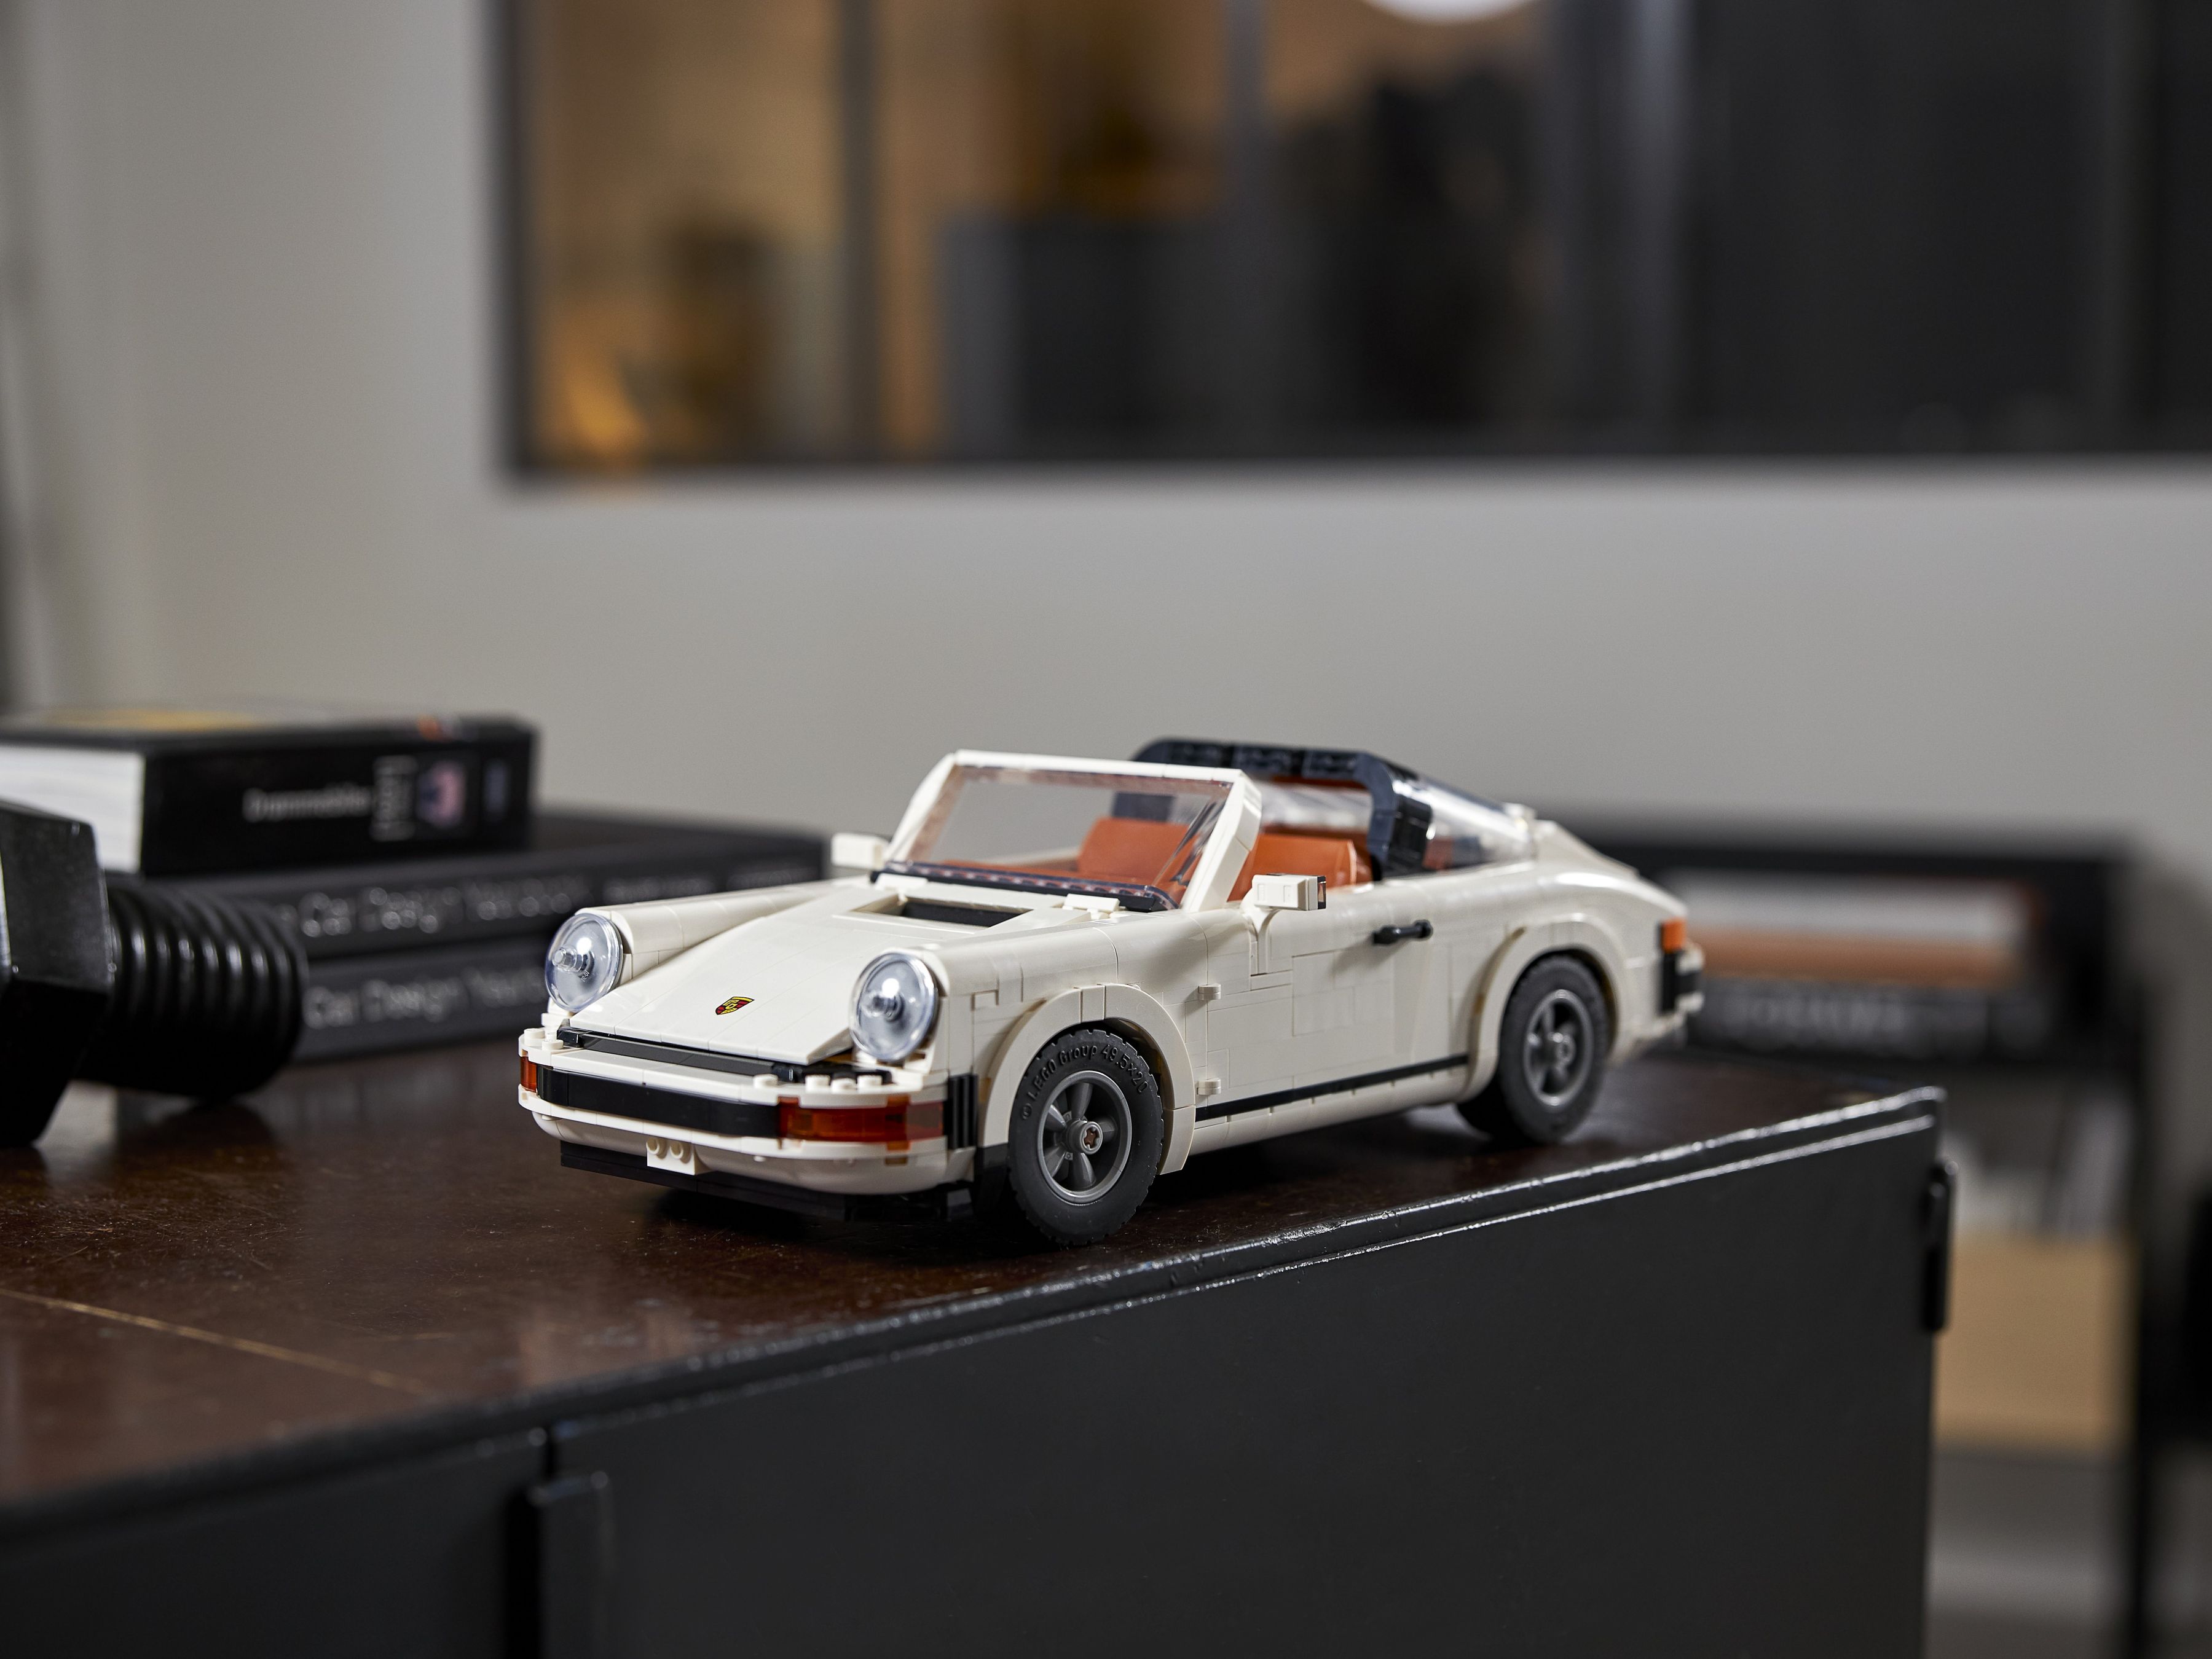 LEGO Advanced Models 10295 Porsche 911 LEGO_10295_alt28.jpg